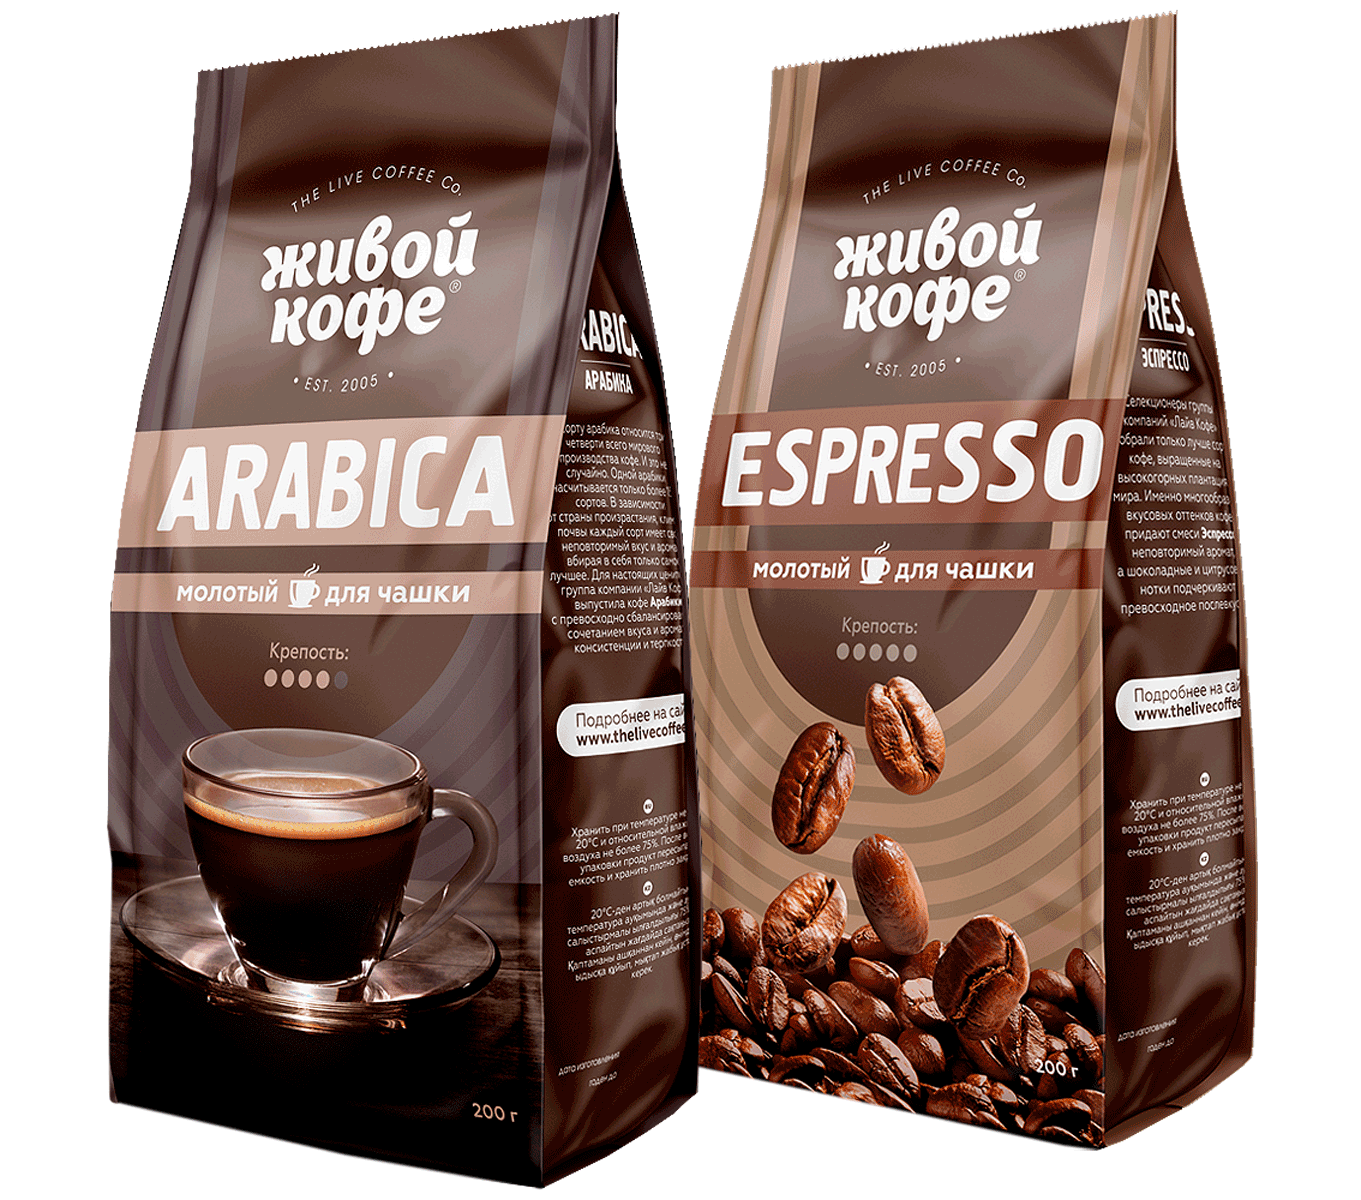 Хороший кофе цена. Живой кофе Арабика в зернах. Кофе Арабика эспрессо. Упаковка кофе в зернах. Марки кофе в зернах.